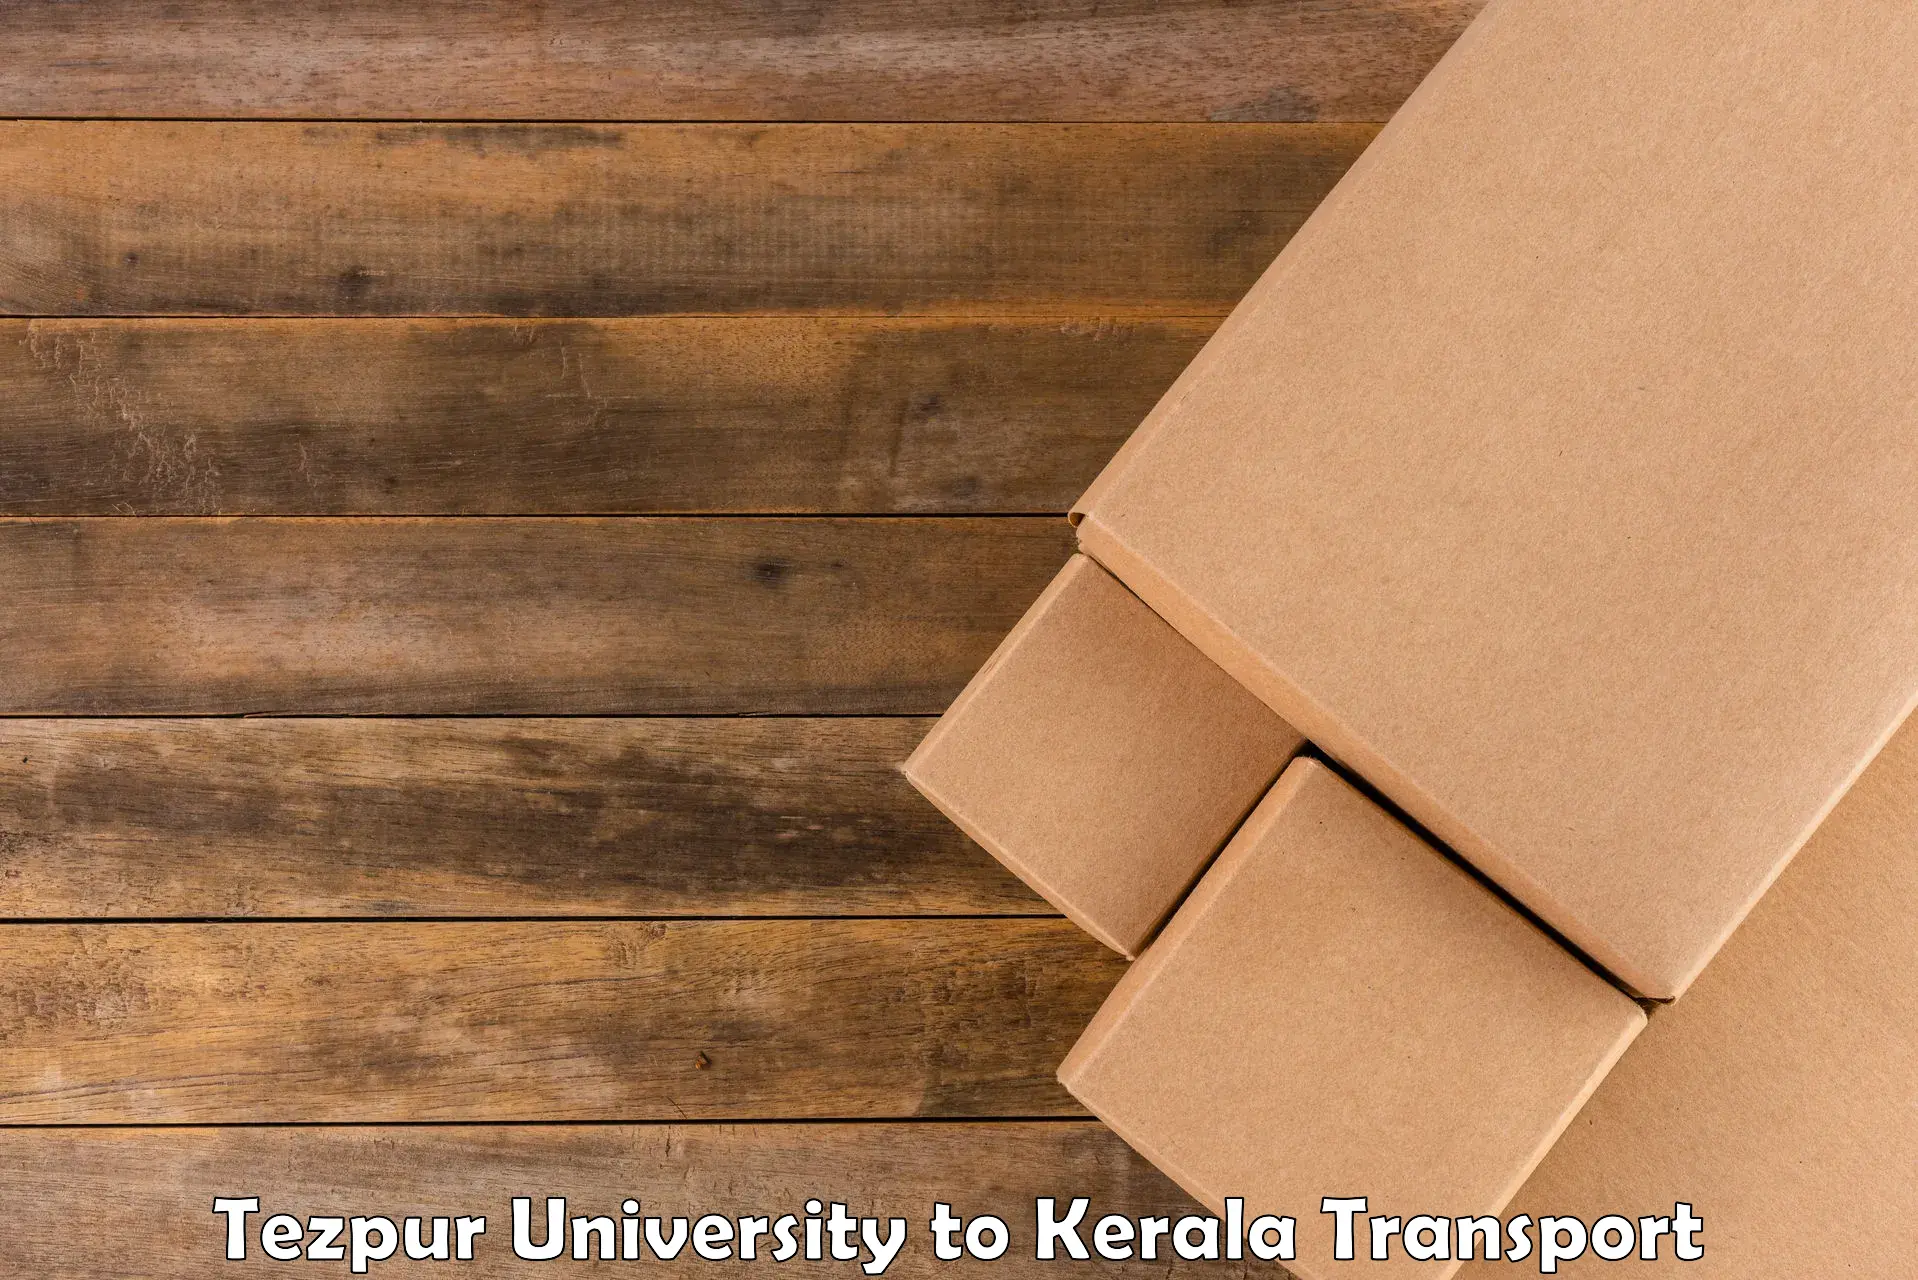 Bike shipping service Tezpur University to Taliparamba